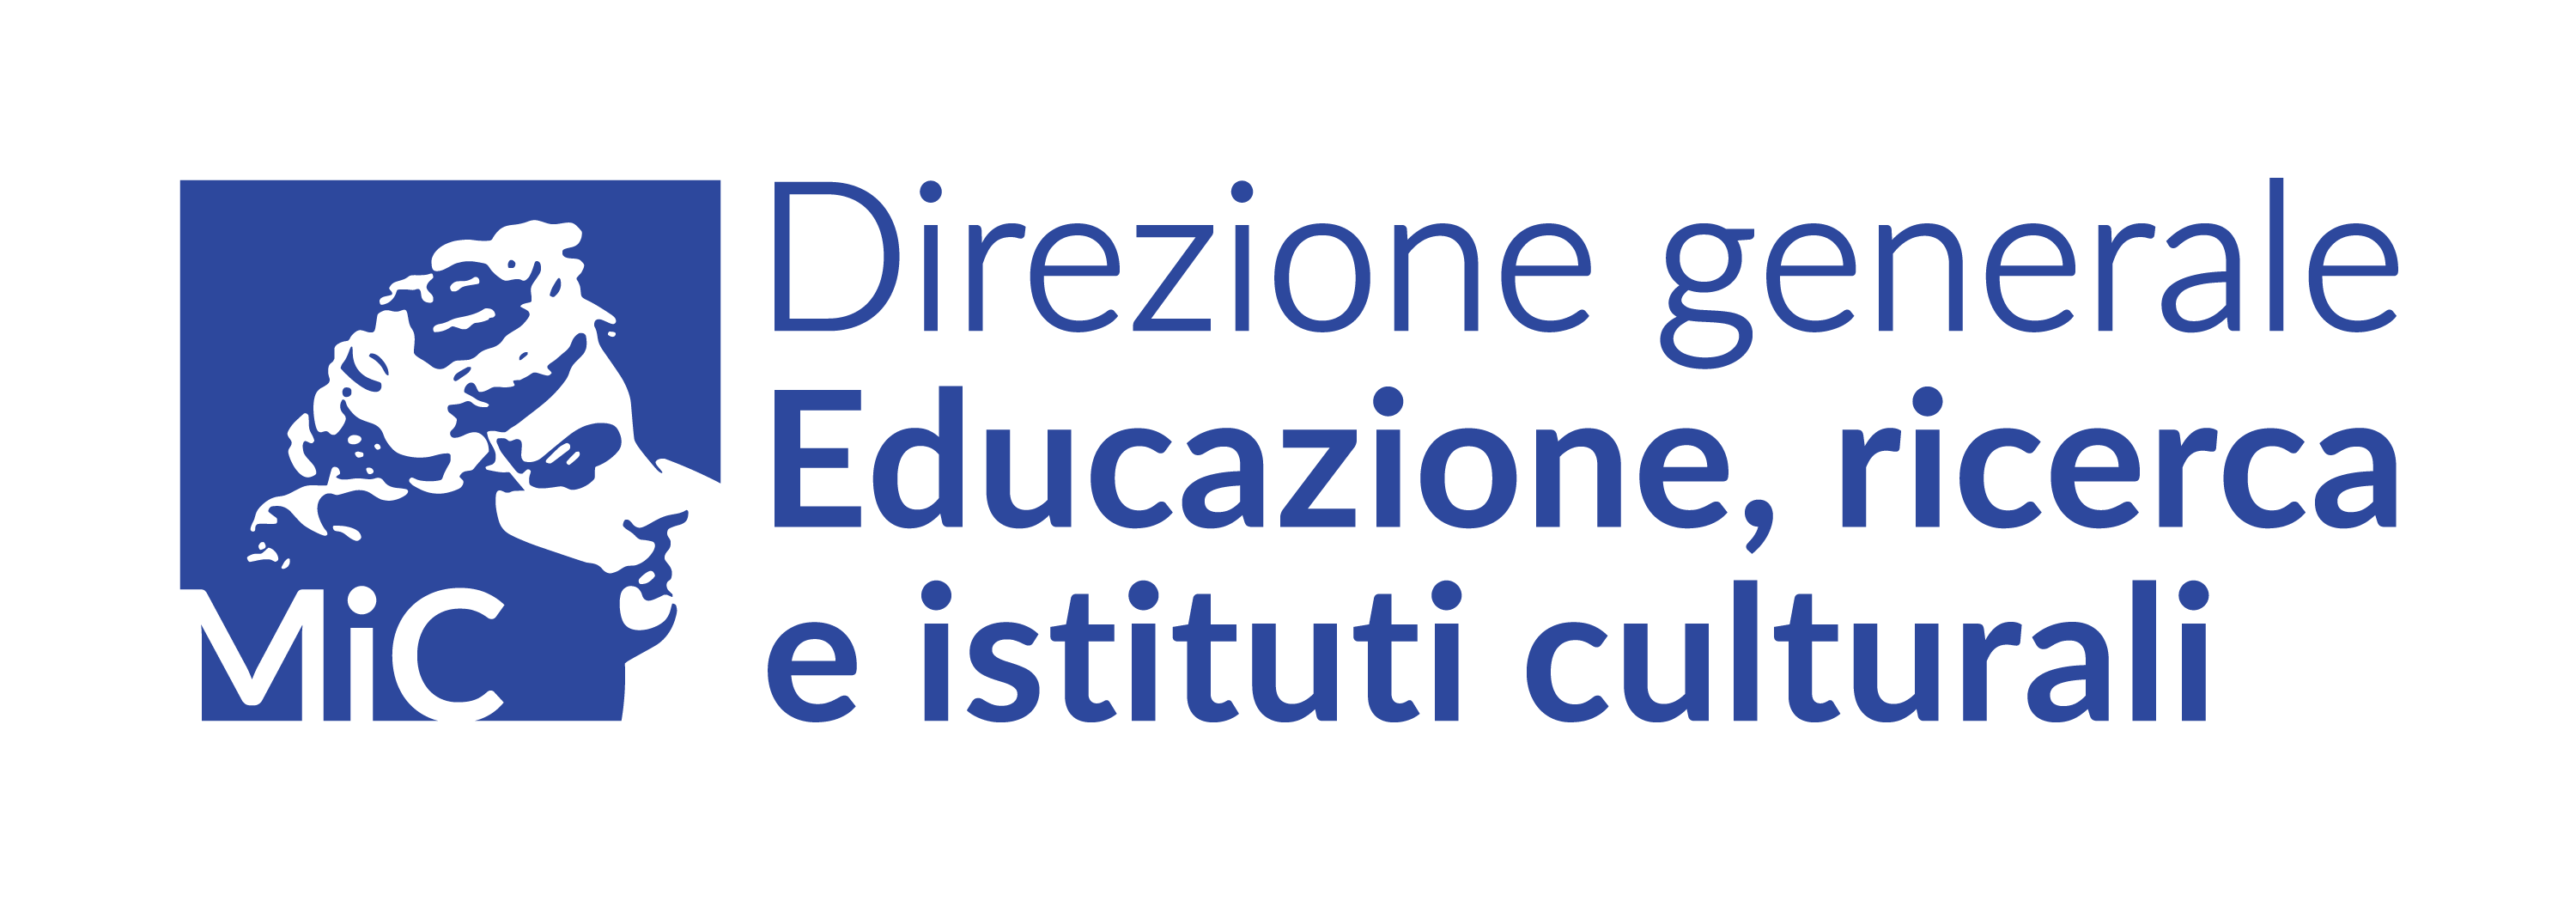 logo_dgeric